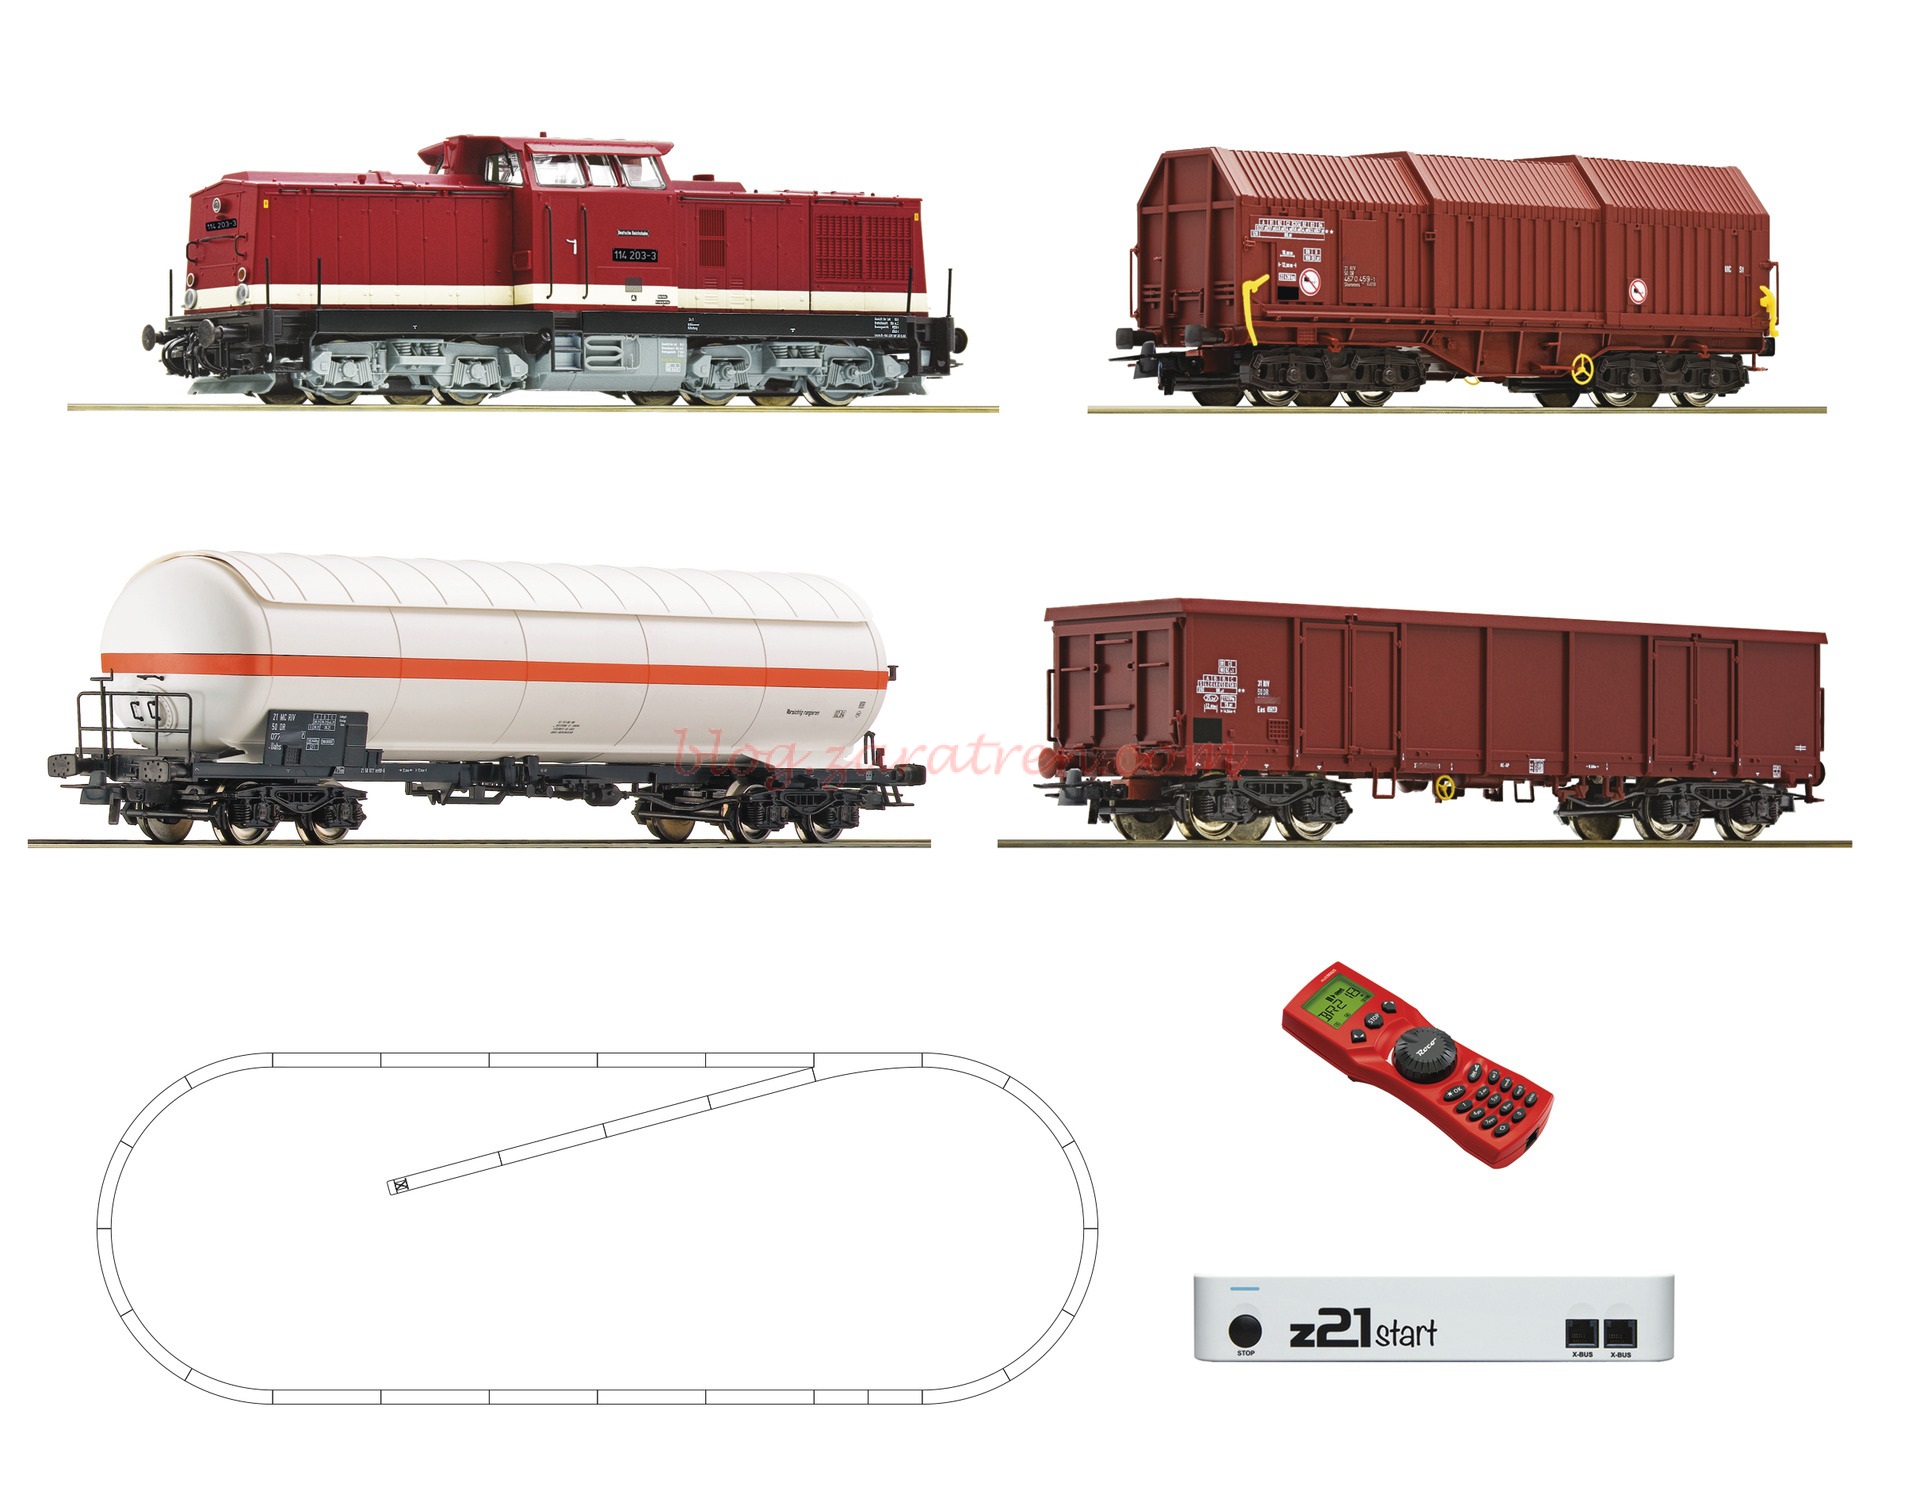 Roco – Set de iniciación Loc. Diesel clase 114, DR, Con tres vagones, Digital, Z21 y mando, Ref: 51321.